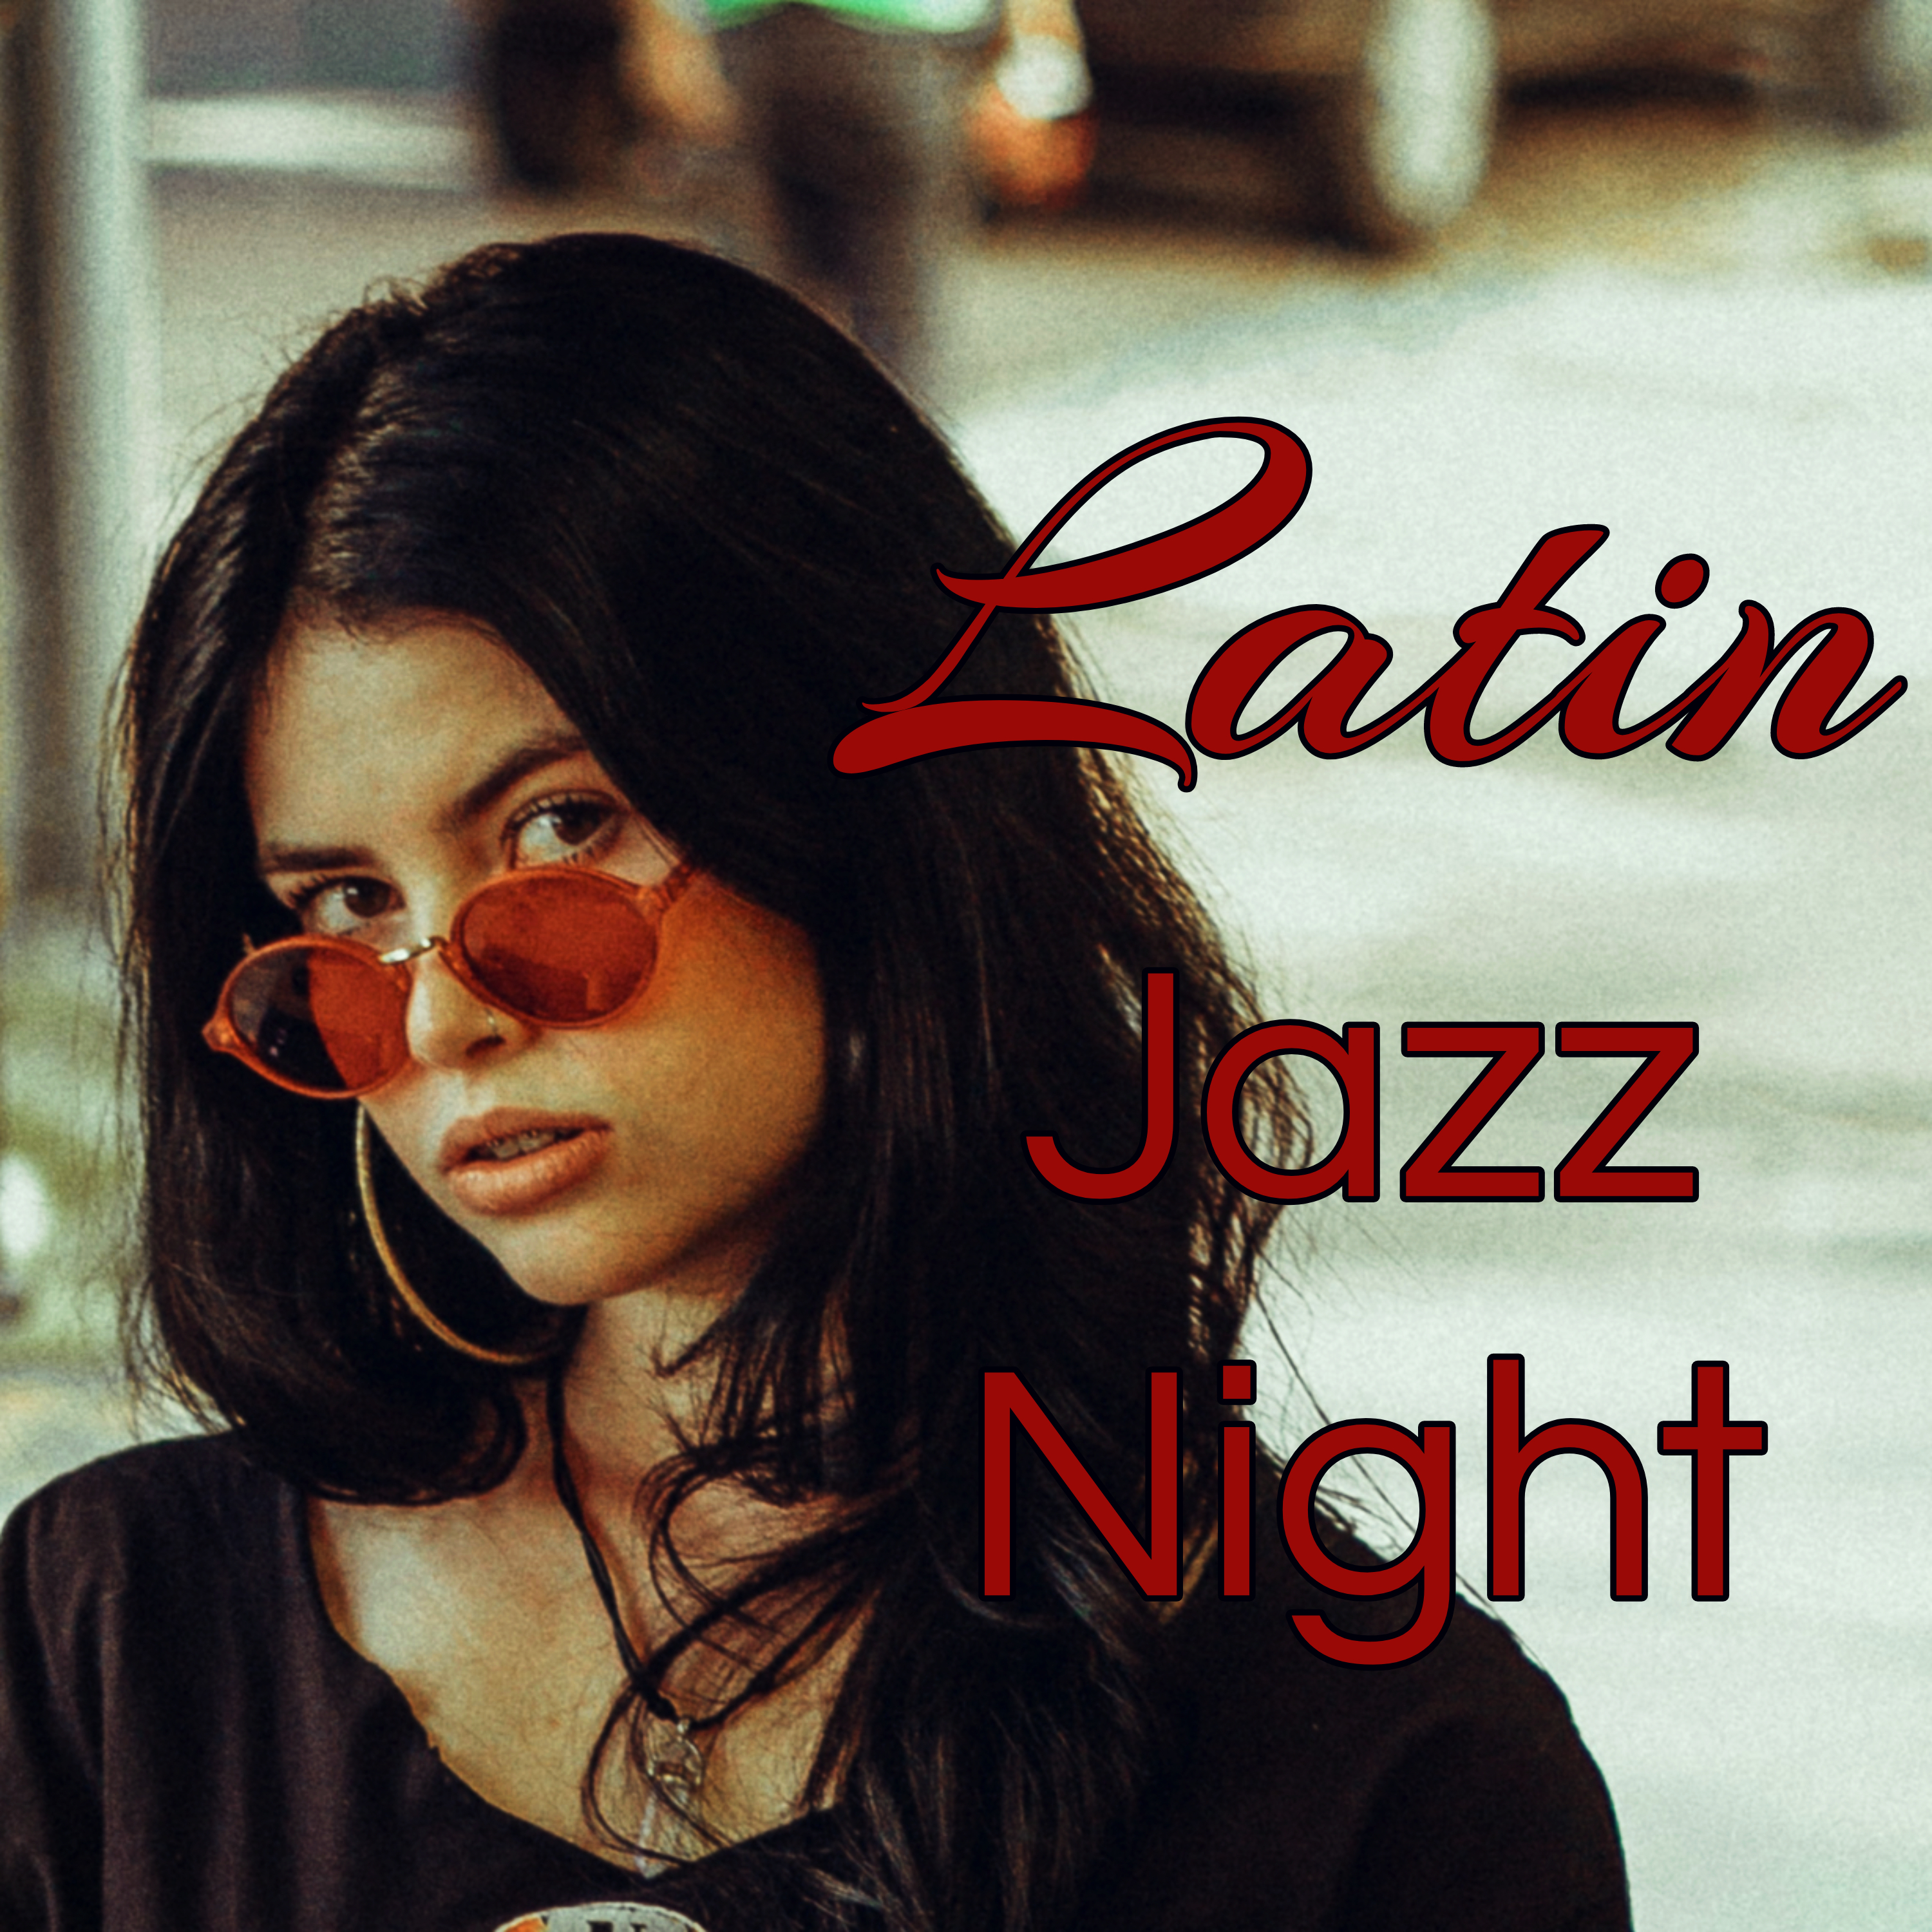 Latin Jazz Night – Bossa Nova Latin Jazz